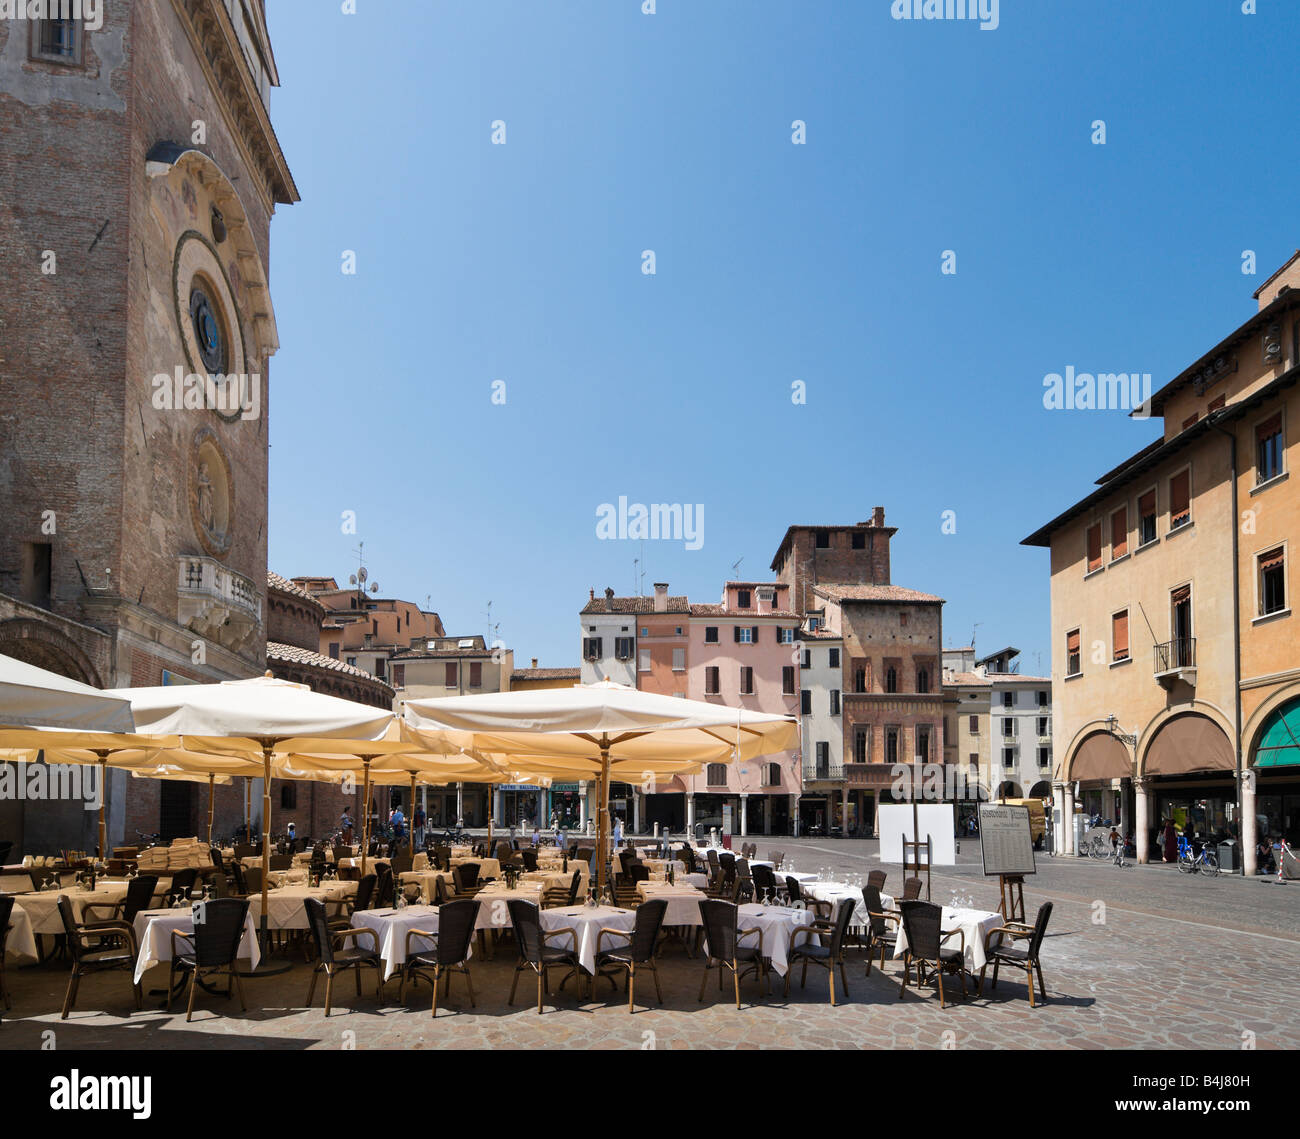 Restaurant outside the Palazzo della Ragione in Piazza dell'Erbe, Mantua,  Lombardy, Italy Stock Photo